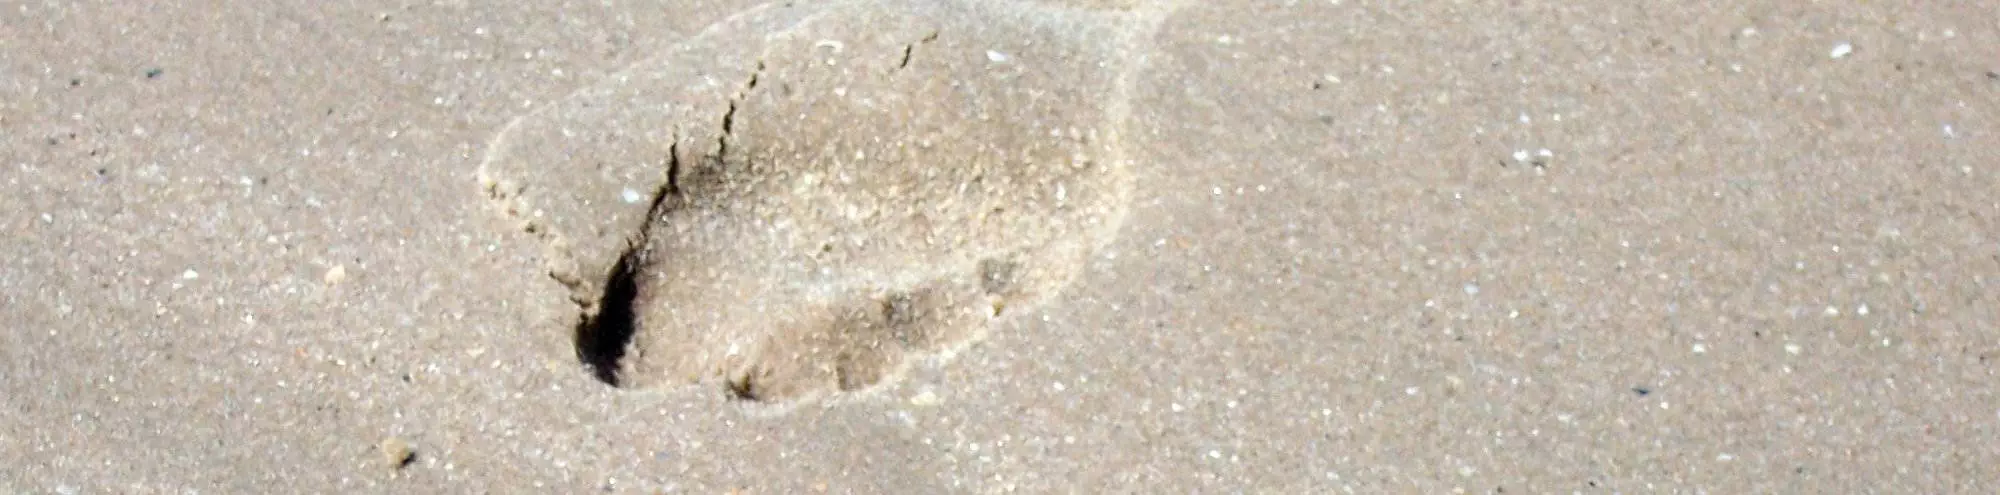 Ein ökologischer Fußabdruck an einem Strand.